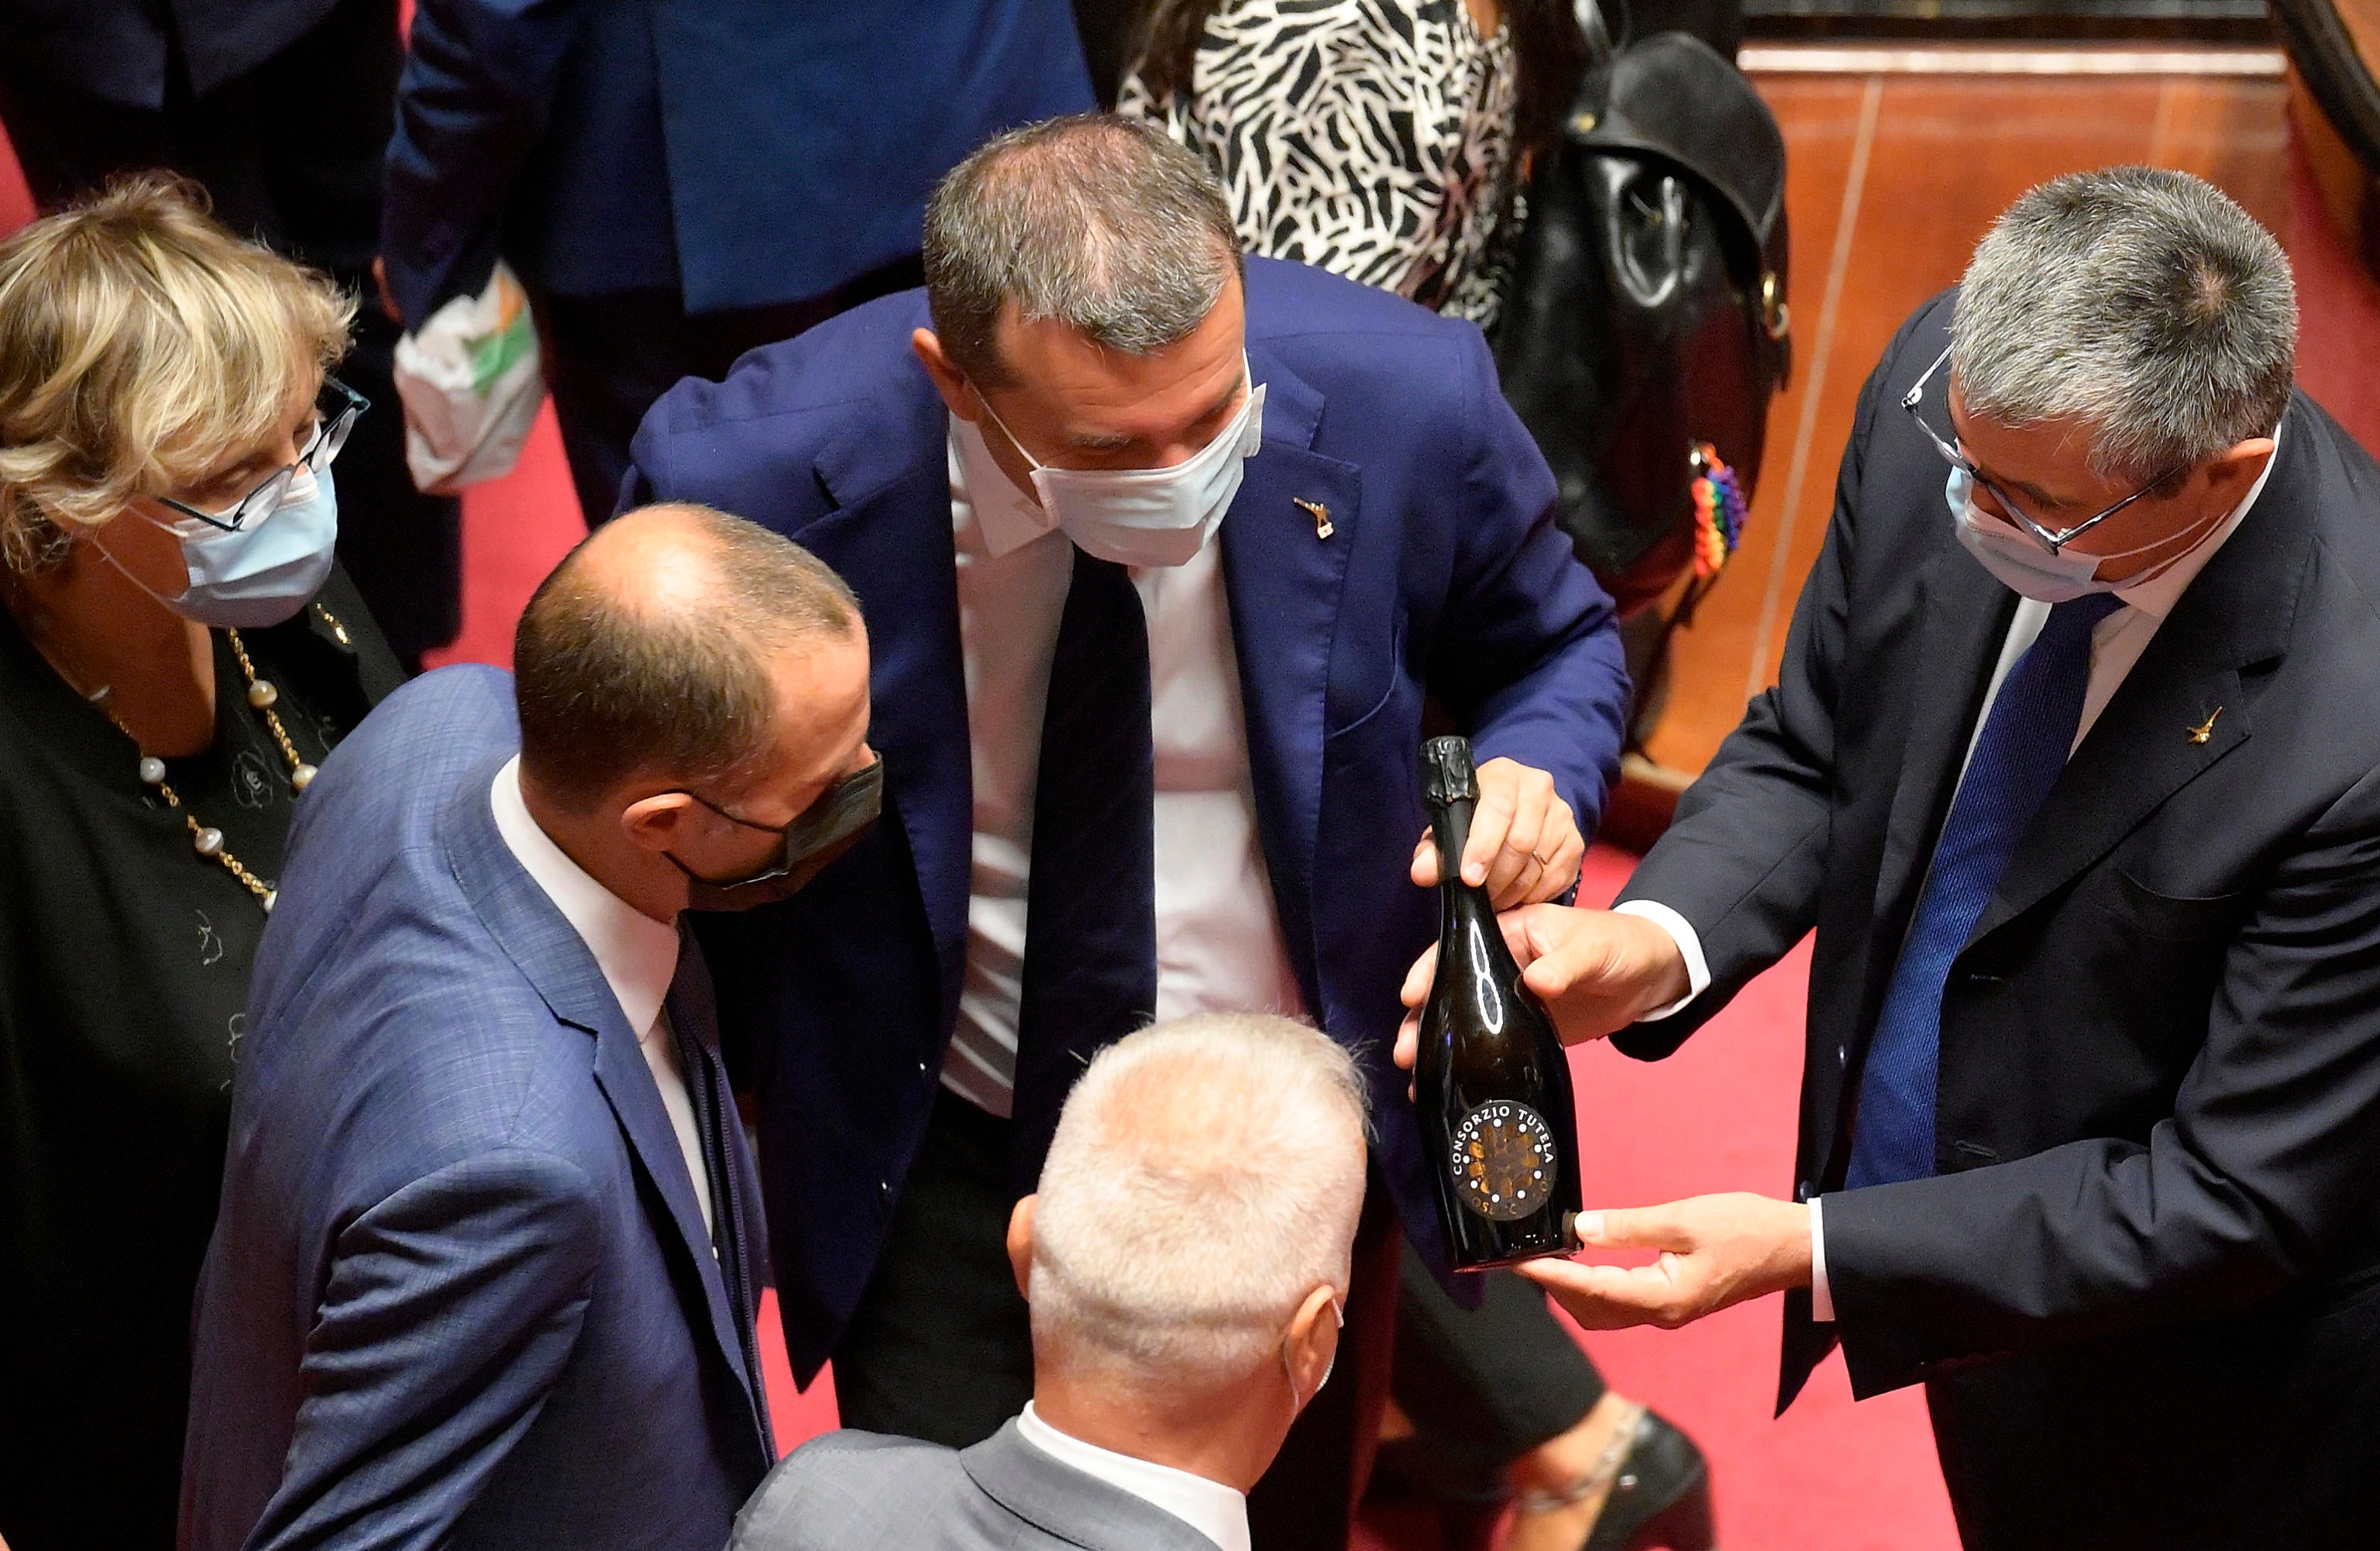 Foto de archivo: legisladores italianos muestran botellas de Prosecco durante una reunión informativa en Roma, Italia, el 22 de septiembre de 2021